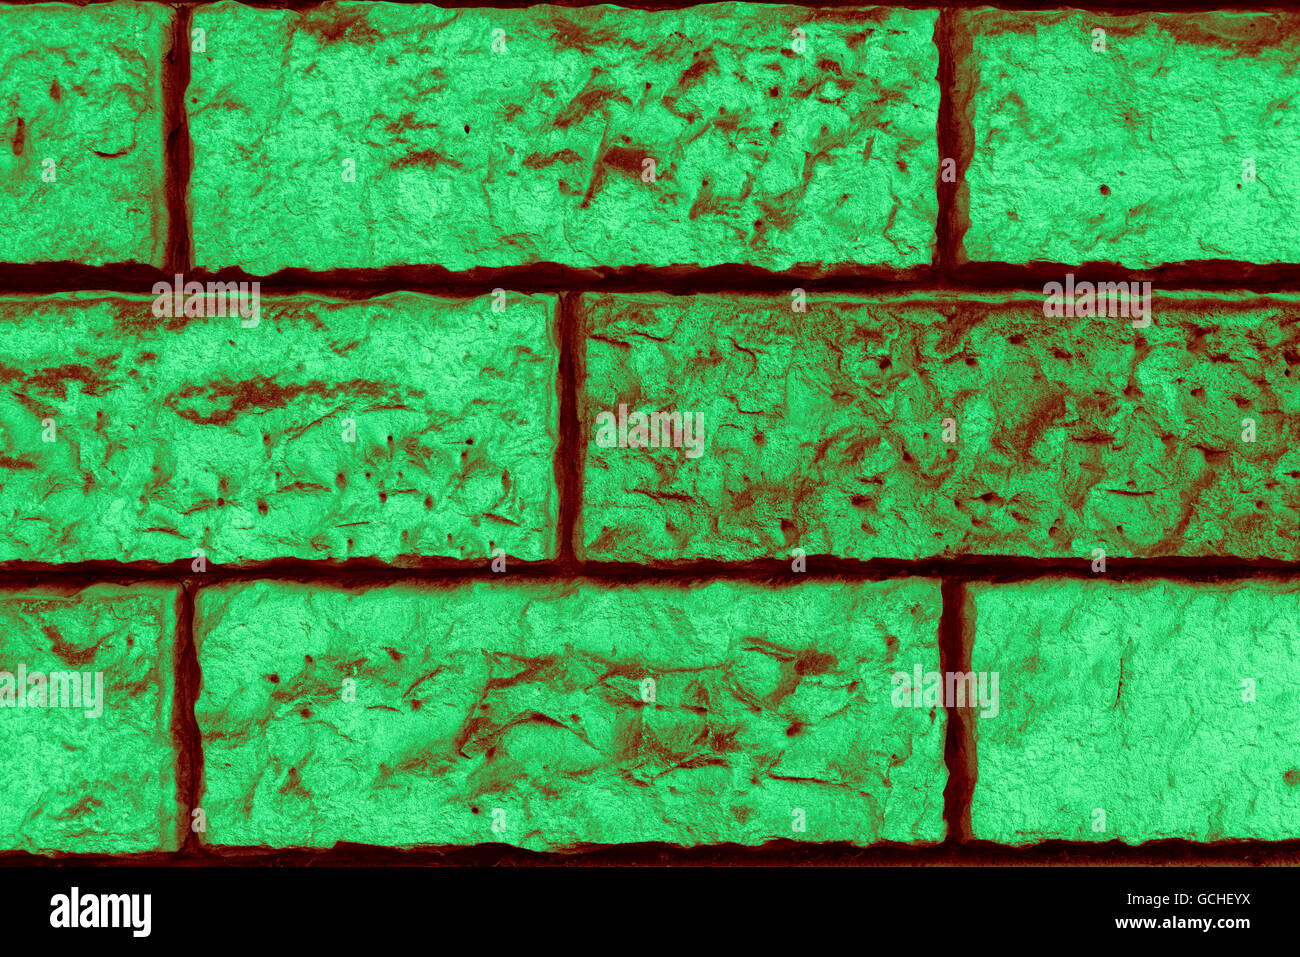 Perfetta luce verde scuro tendente al rosso bruno verdastro ad alta risoluzione urbano naturale muro di mattoni in background Foto Stock